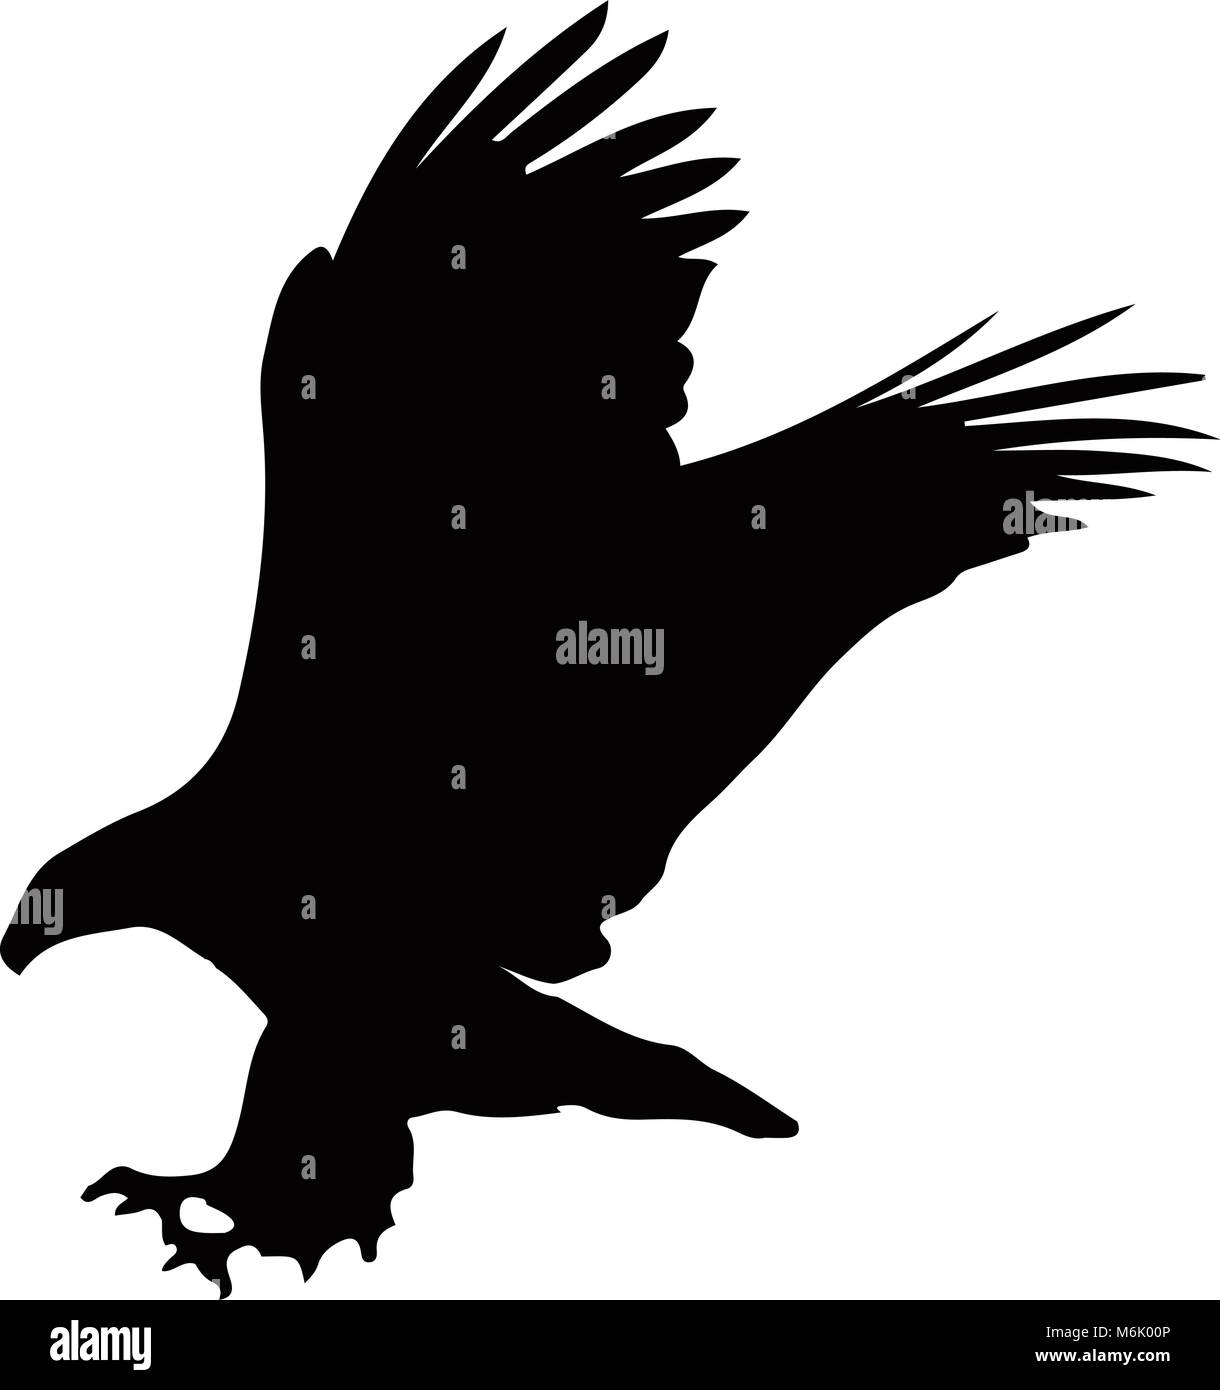 Schwarze Silhouette der Adler auf weißem Hintergrund. Vector Illustration, Clip Art, Symbol, Zeichen, Symbol der Adler für Design. Stock Vektor